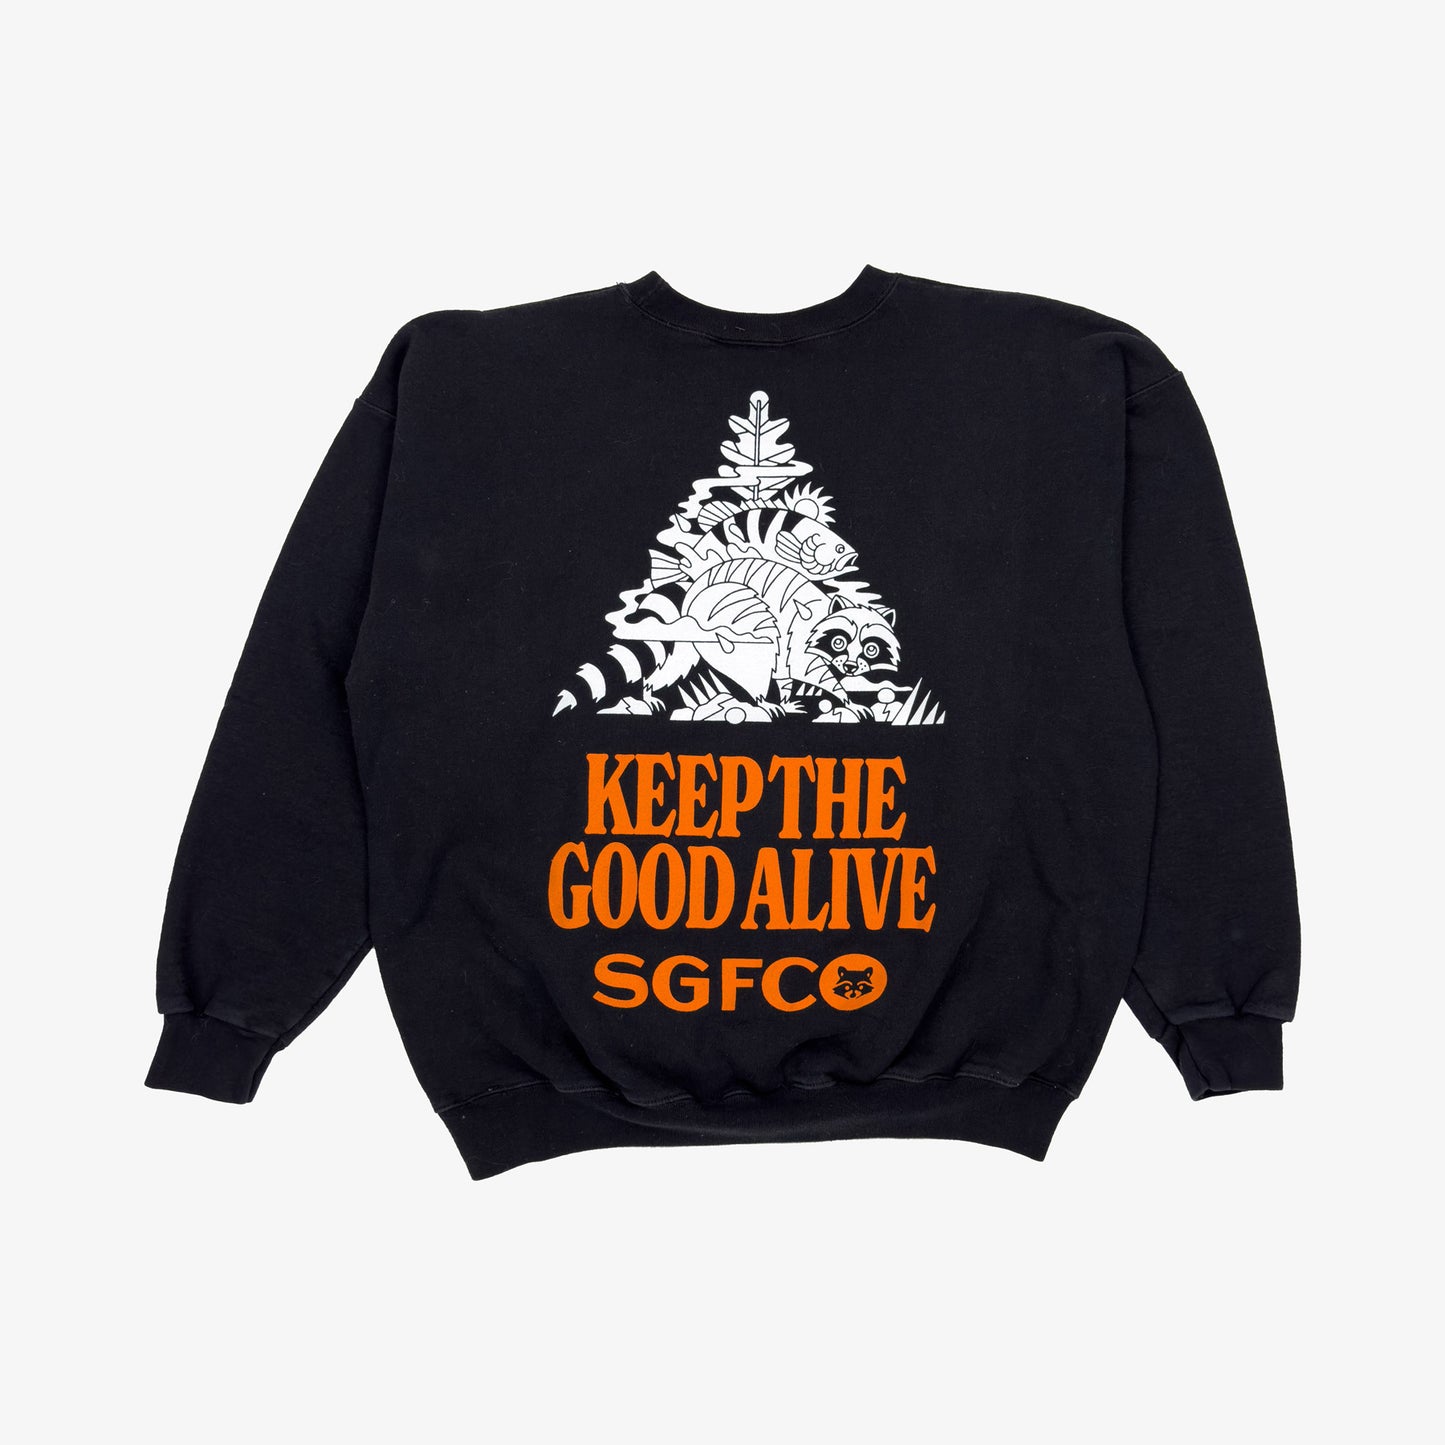 (L) Vintage Keep The Good Alive Sweatshirt - Black